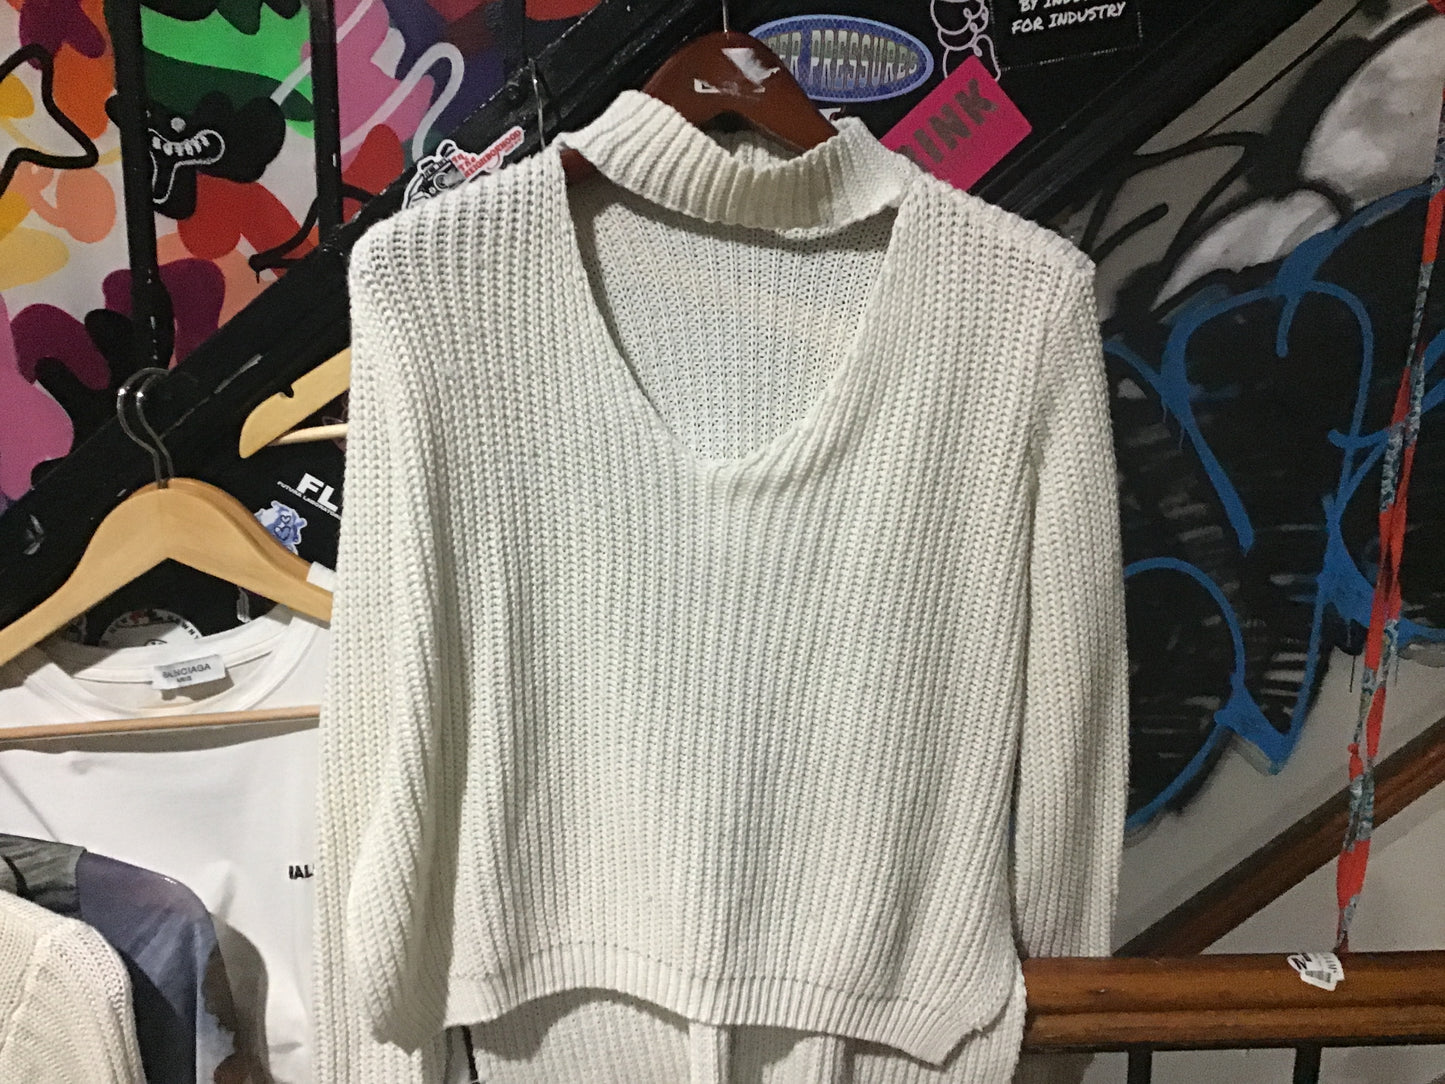 Choker knit sweater